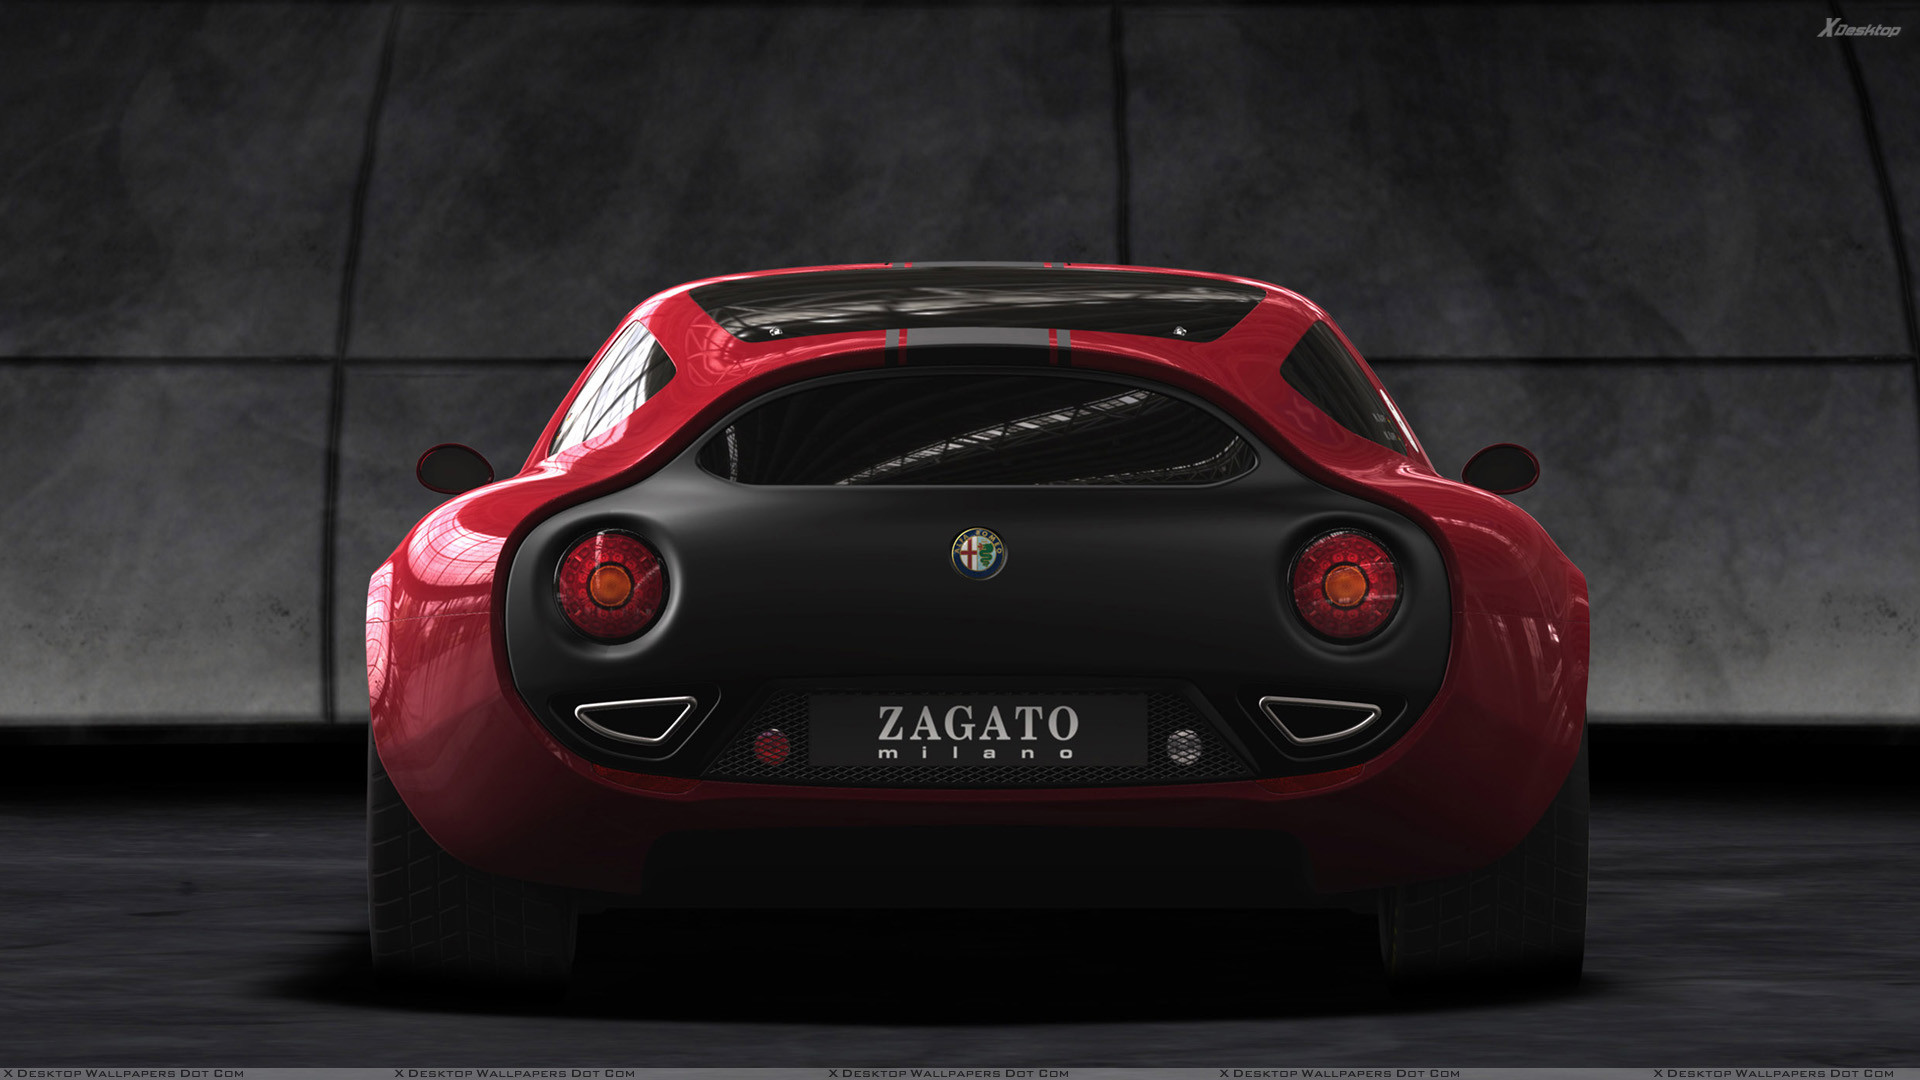 Alfa Romeo P2 Wallpapers